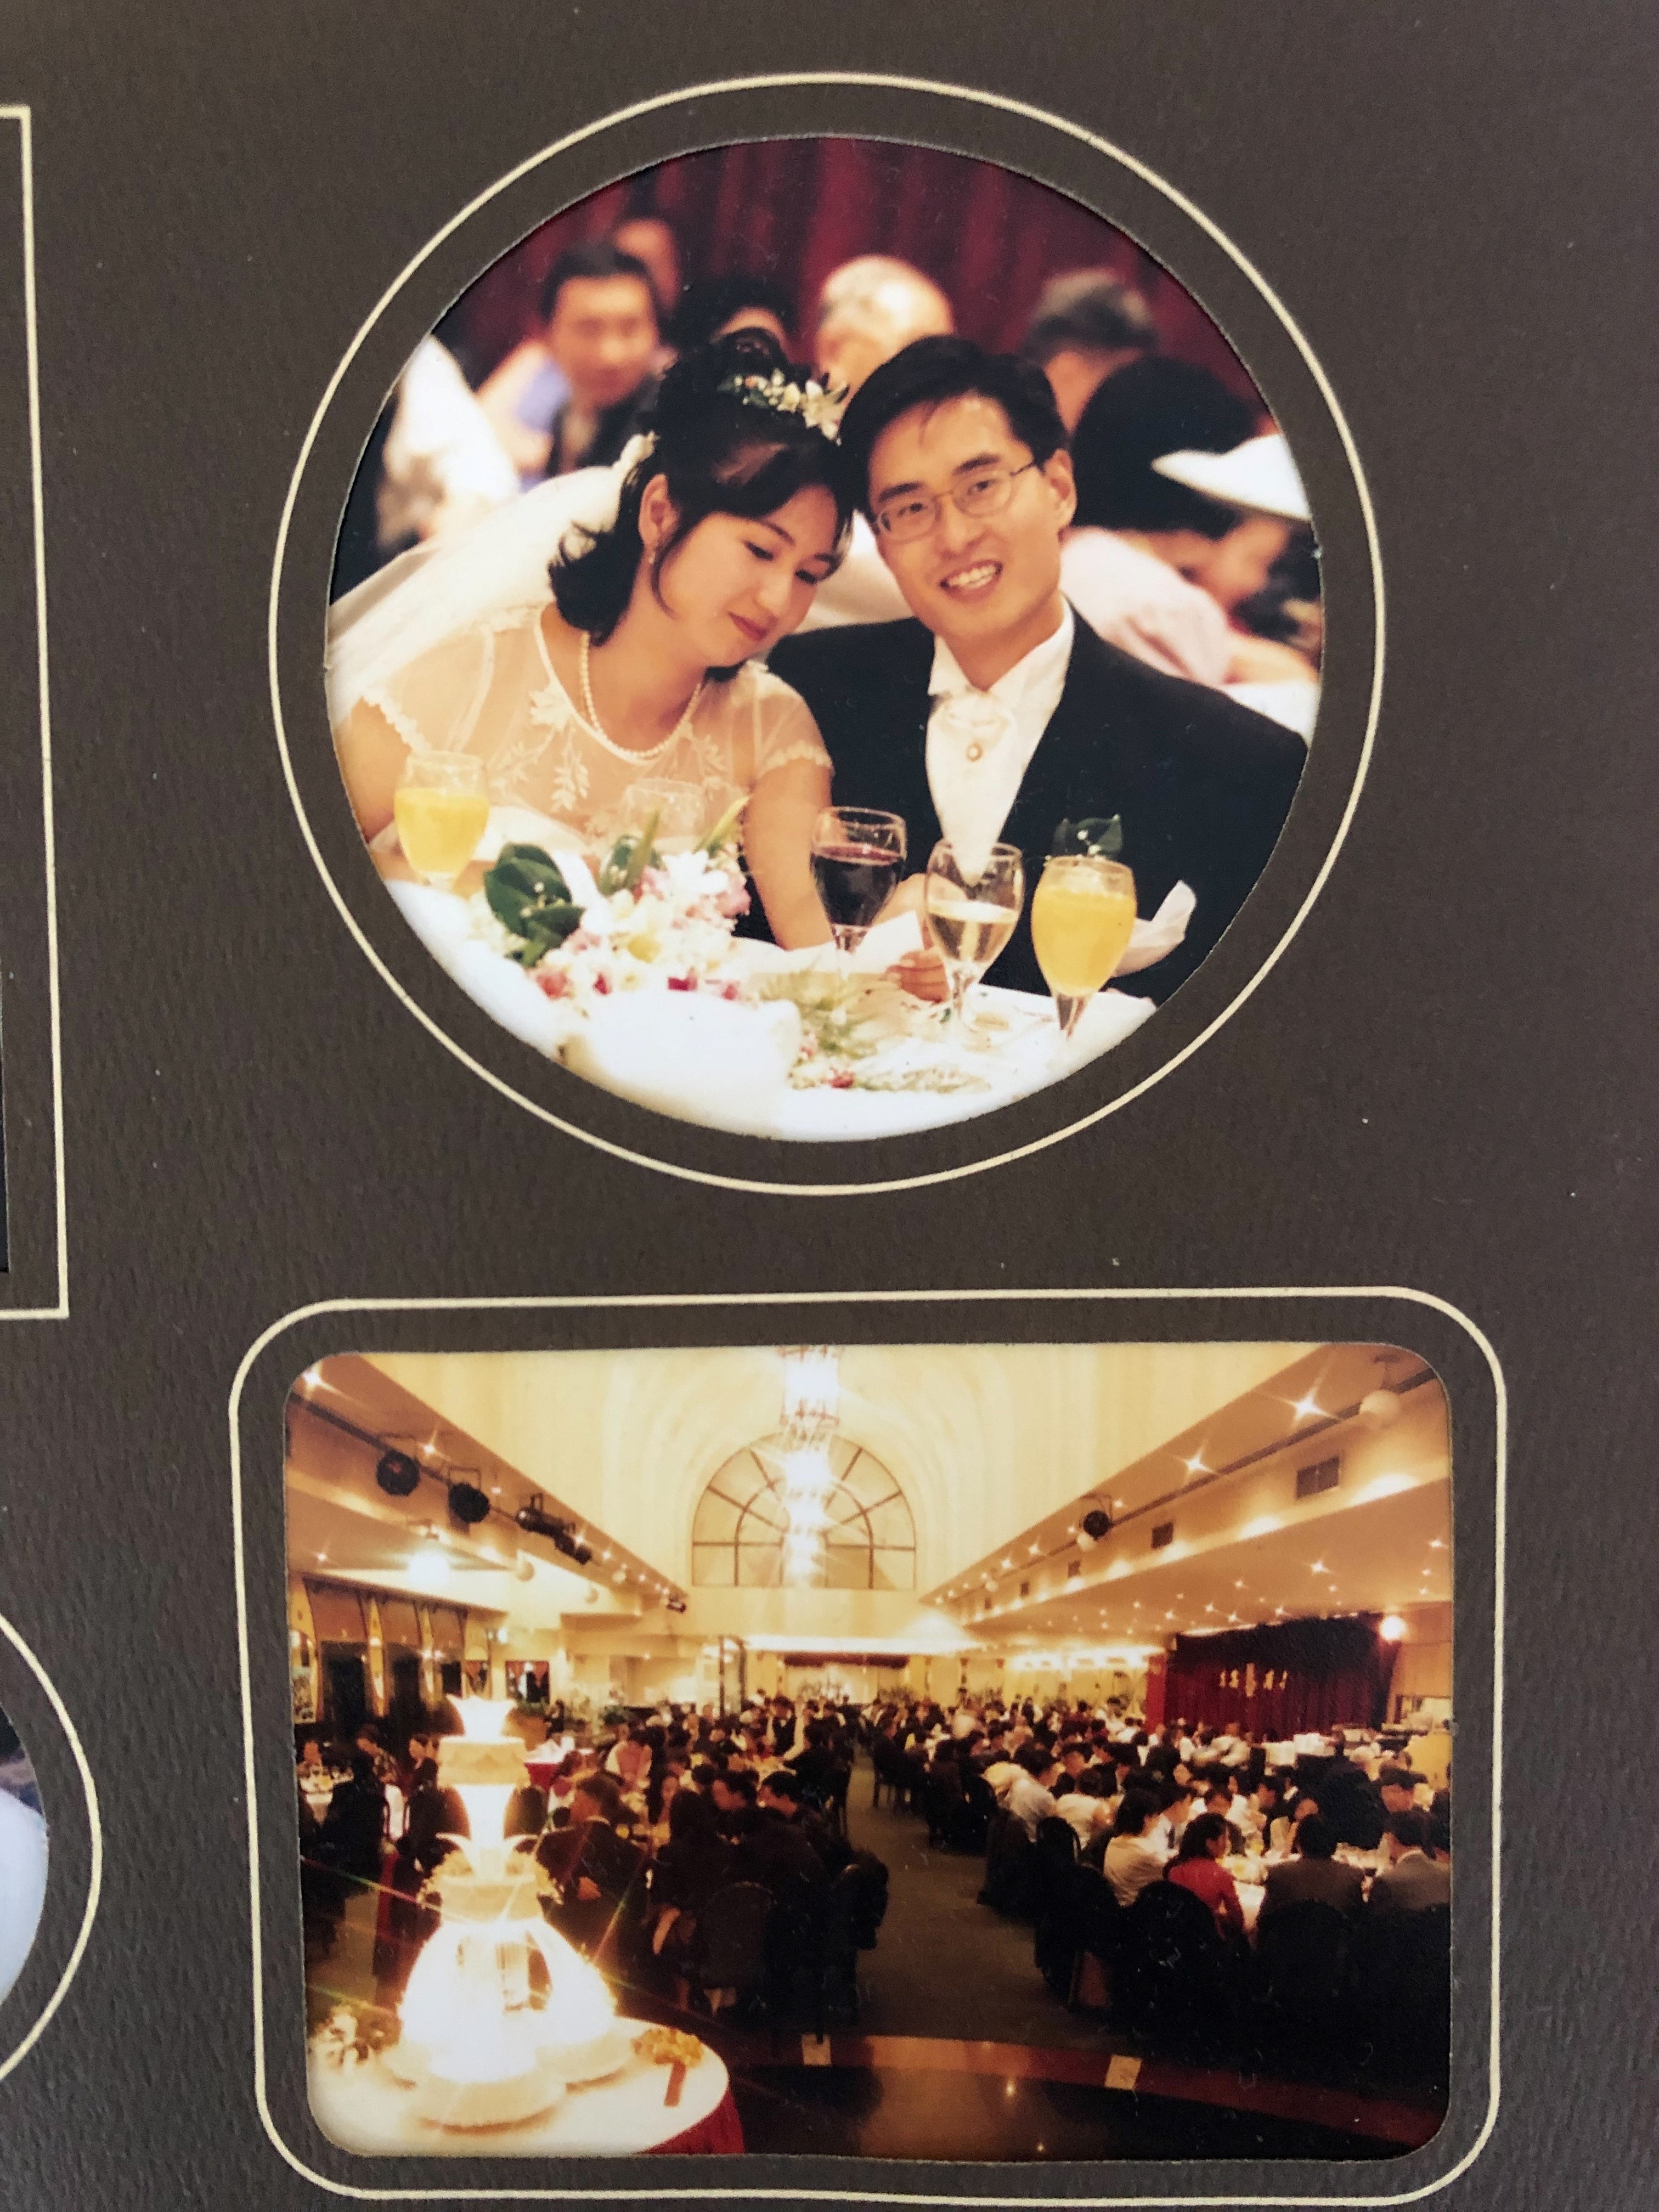 Les photos d'un couple asiatique marié et d'une réception de mariage.